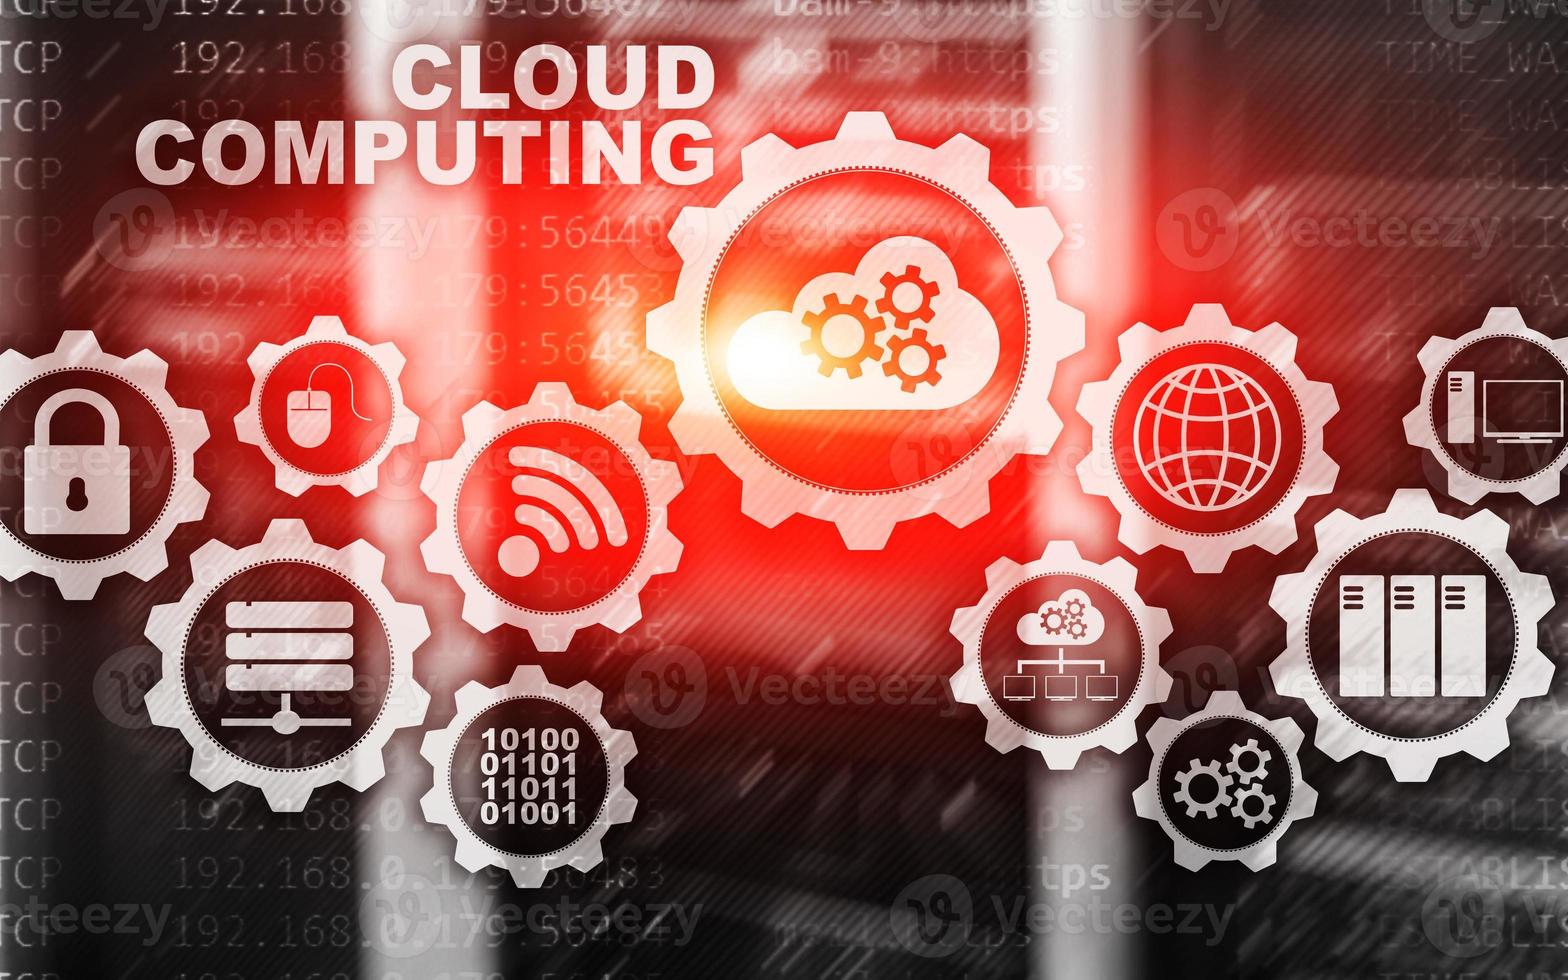 cloud computing, concept de connectivité technologique sur fond de salle de serveur photo